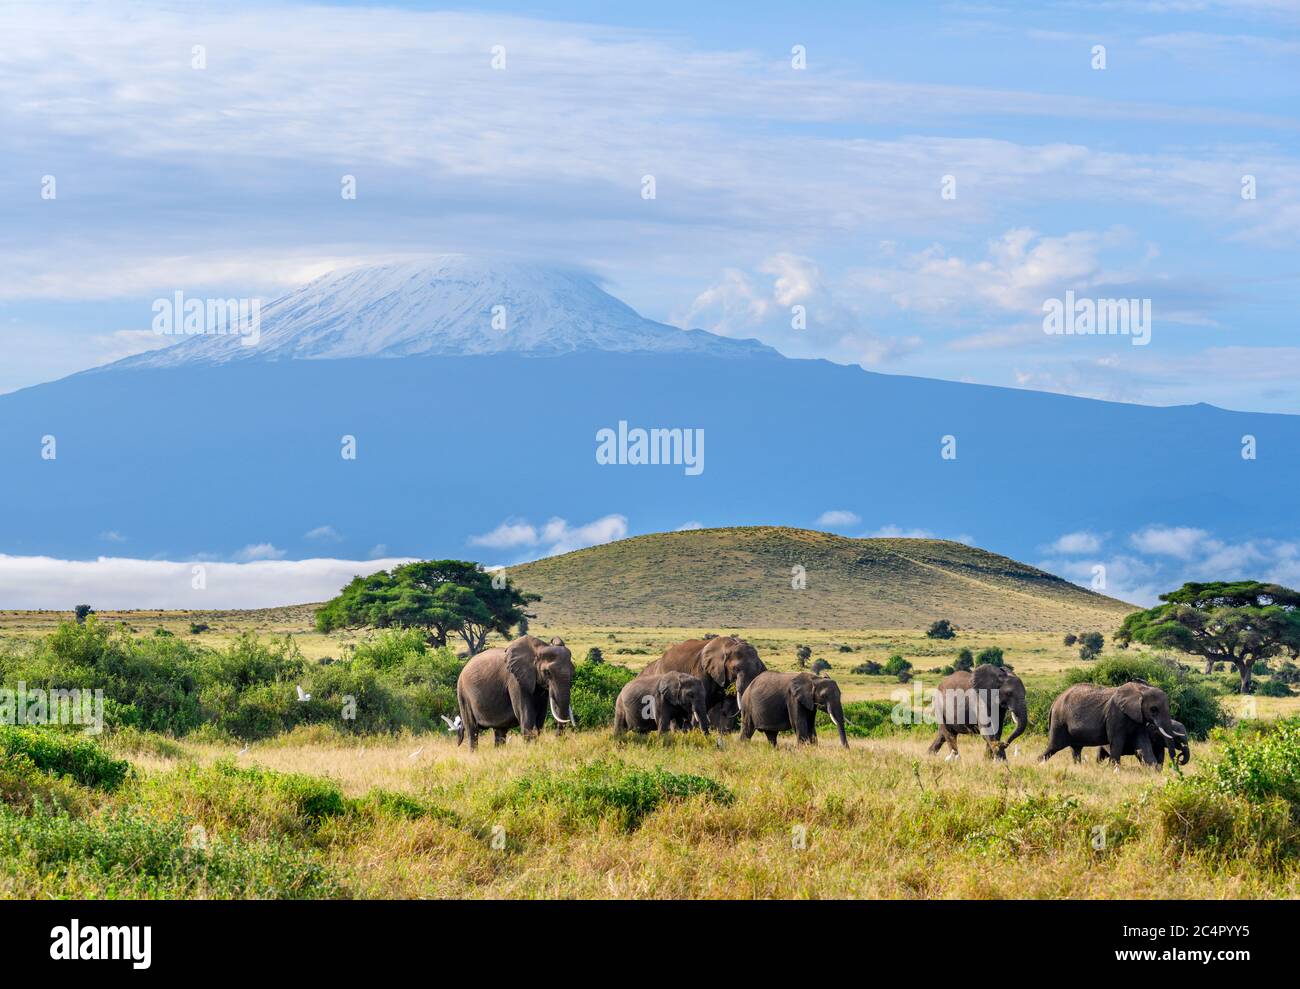 African bush elephants (Loxodonta africana) with Mount Kilimanjaro behind, Amboseli National Park, Kenya, Africa Stock Photo